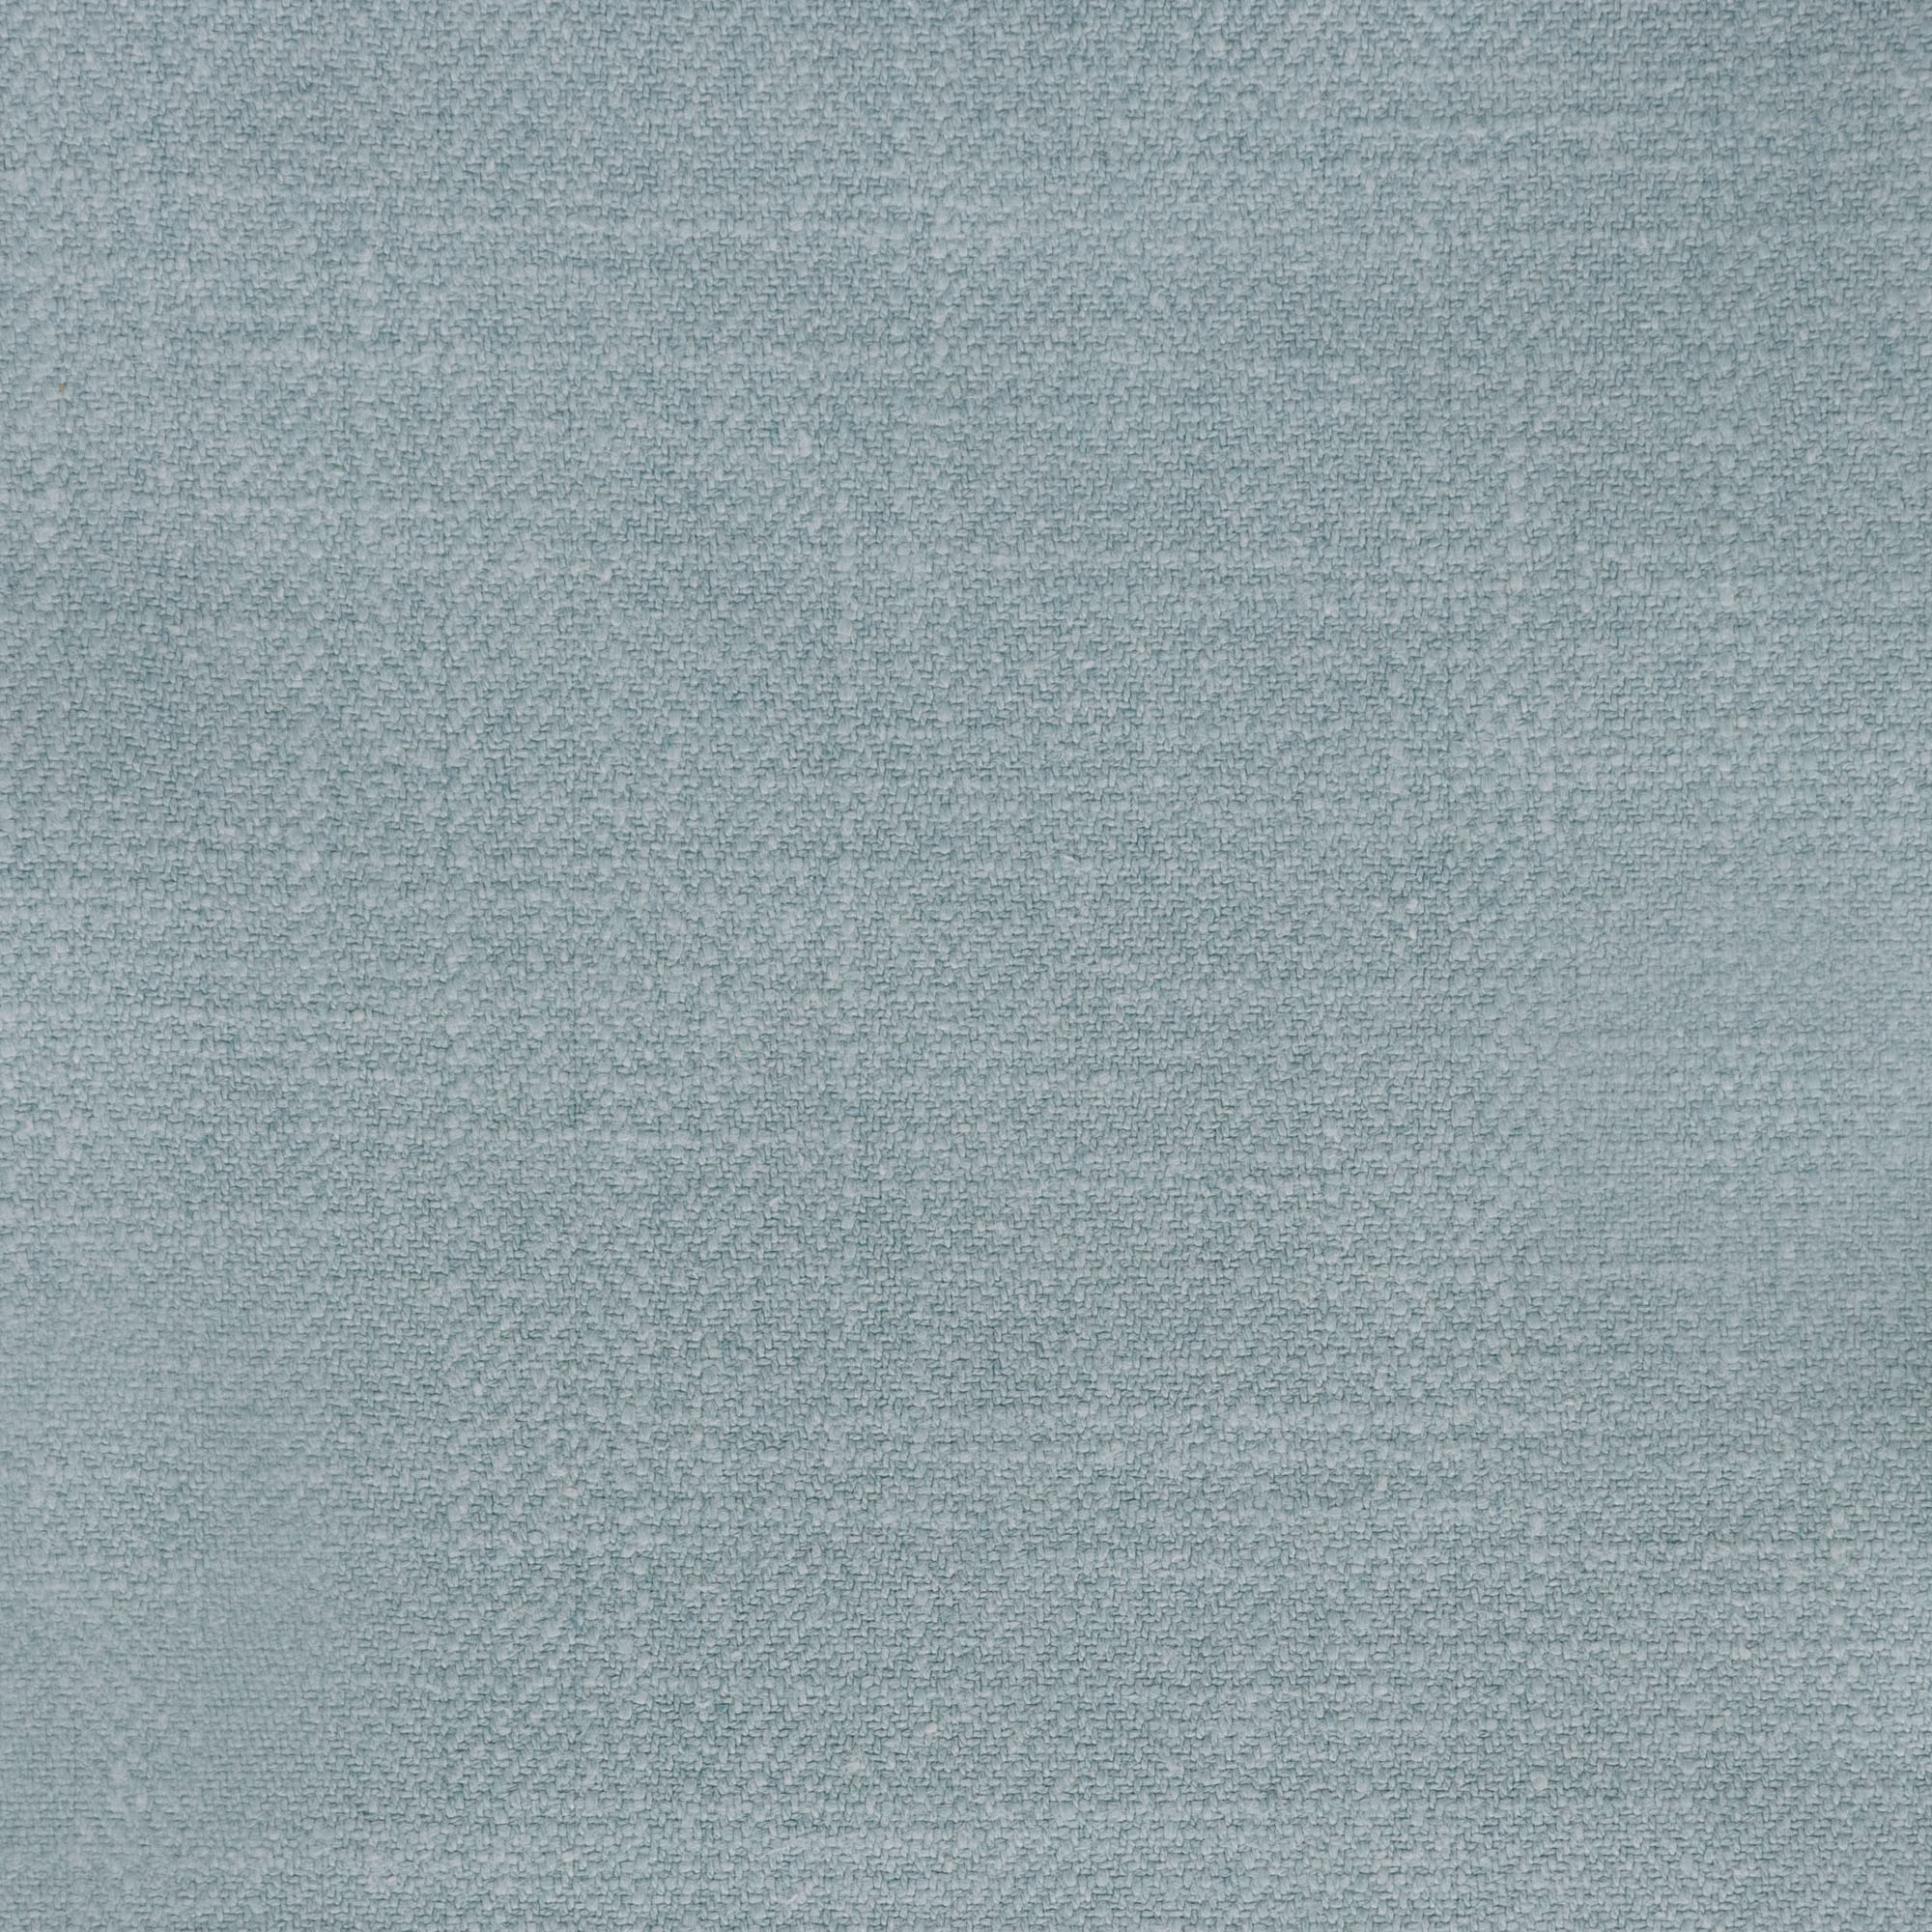 Gir Seabreeze Cotton Linen Blend Fabric Swatch 6" x 6"